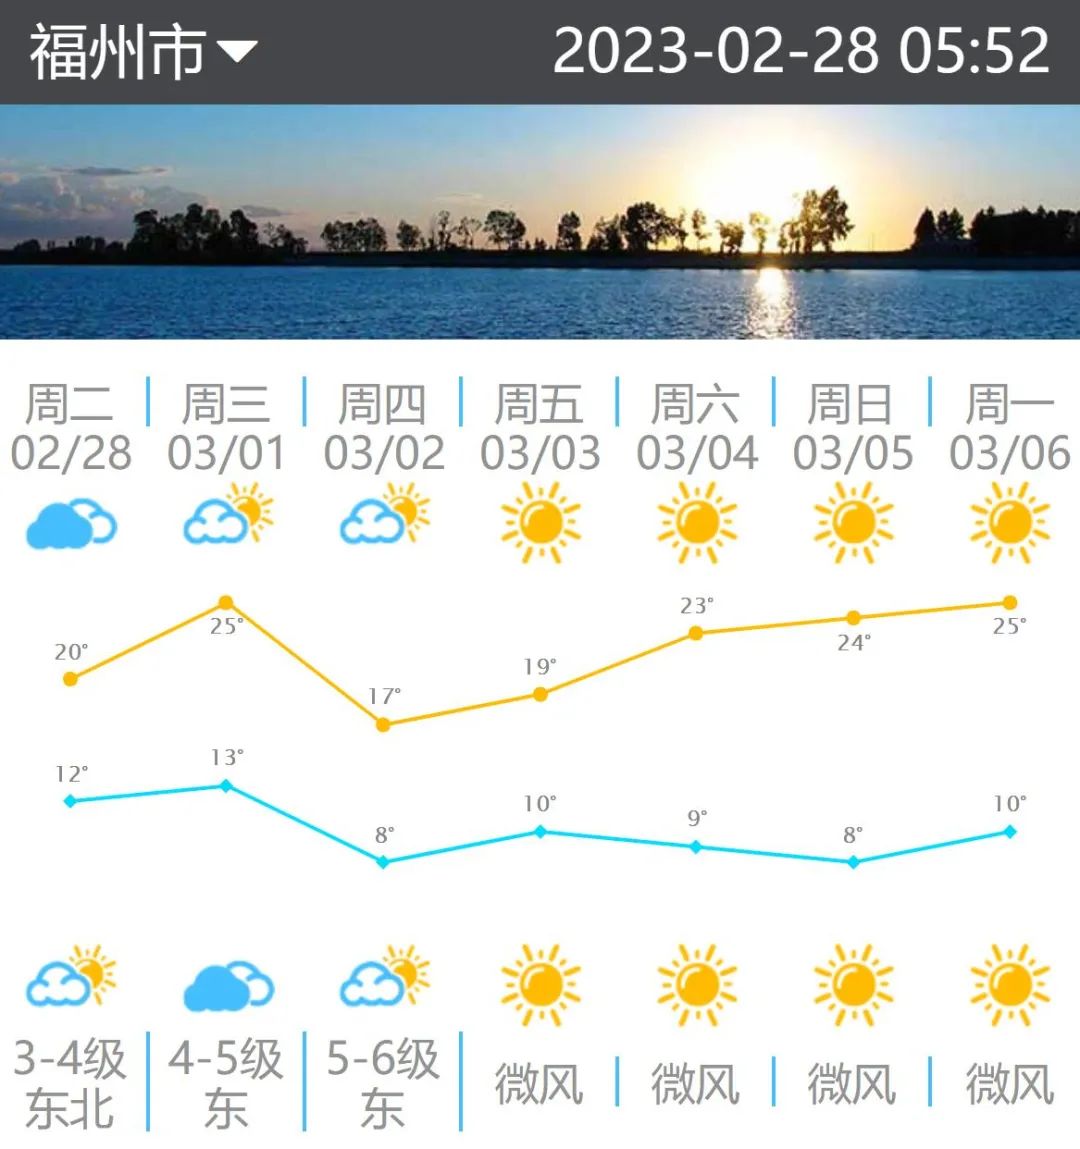 可以穿裙子啦！福州明天最高气温将升至25℃